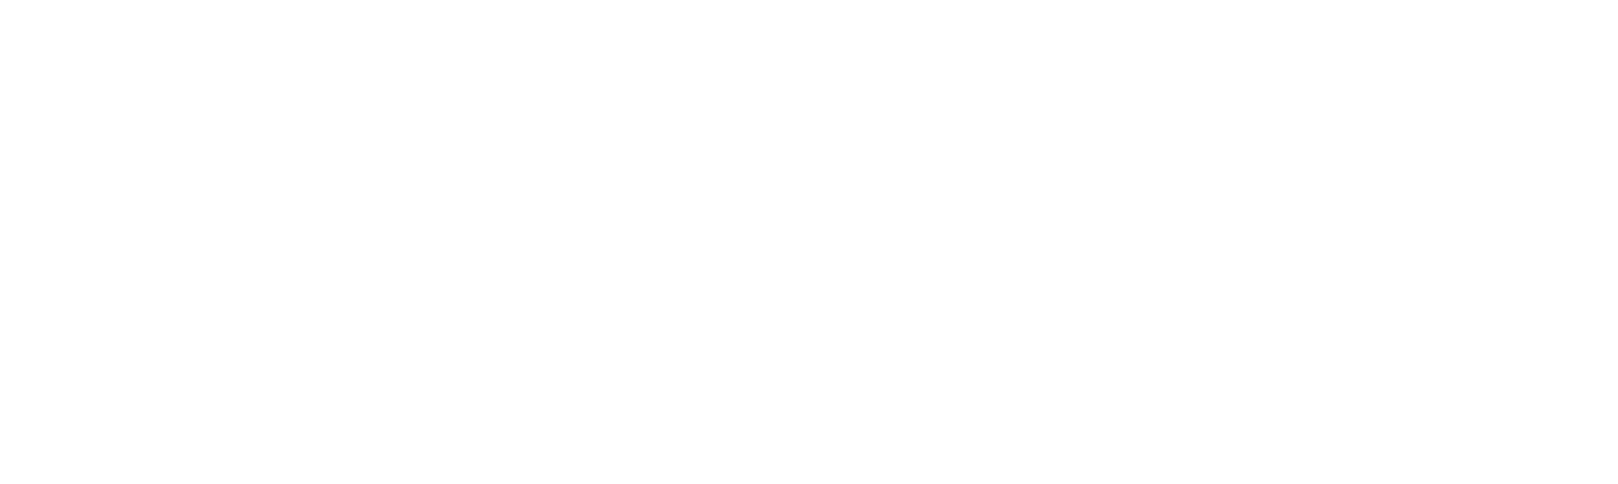 Böhme GmbH & Co. KG